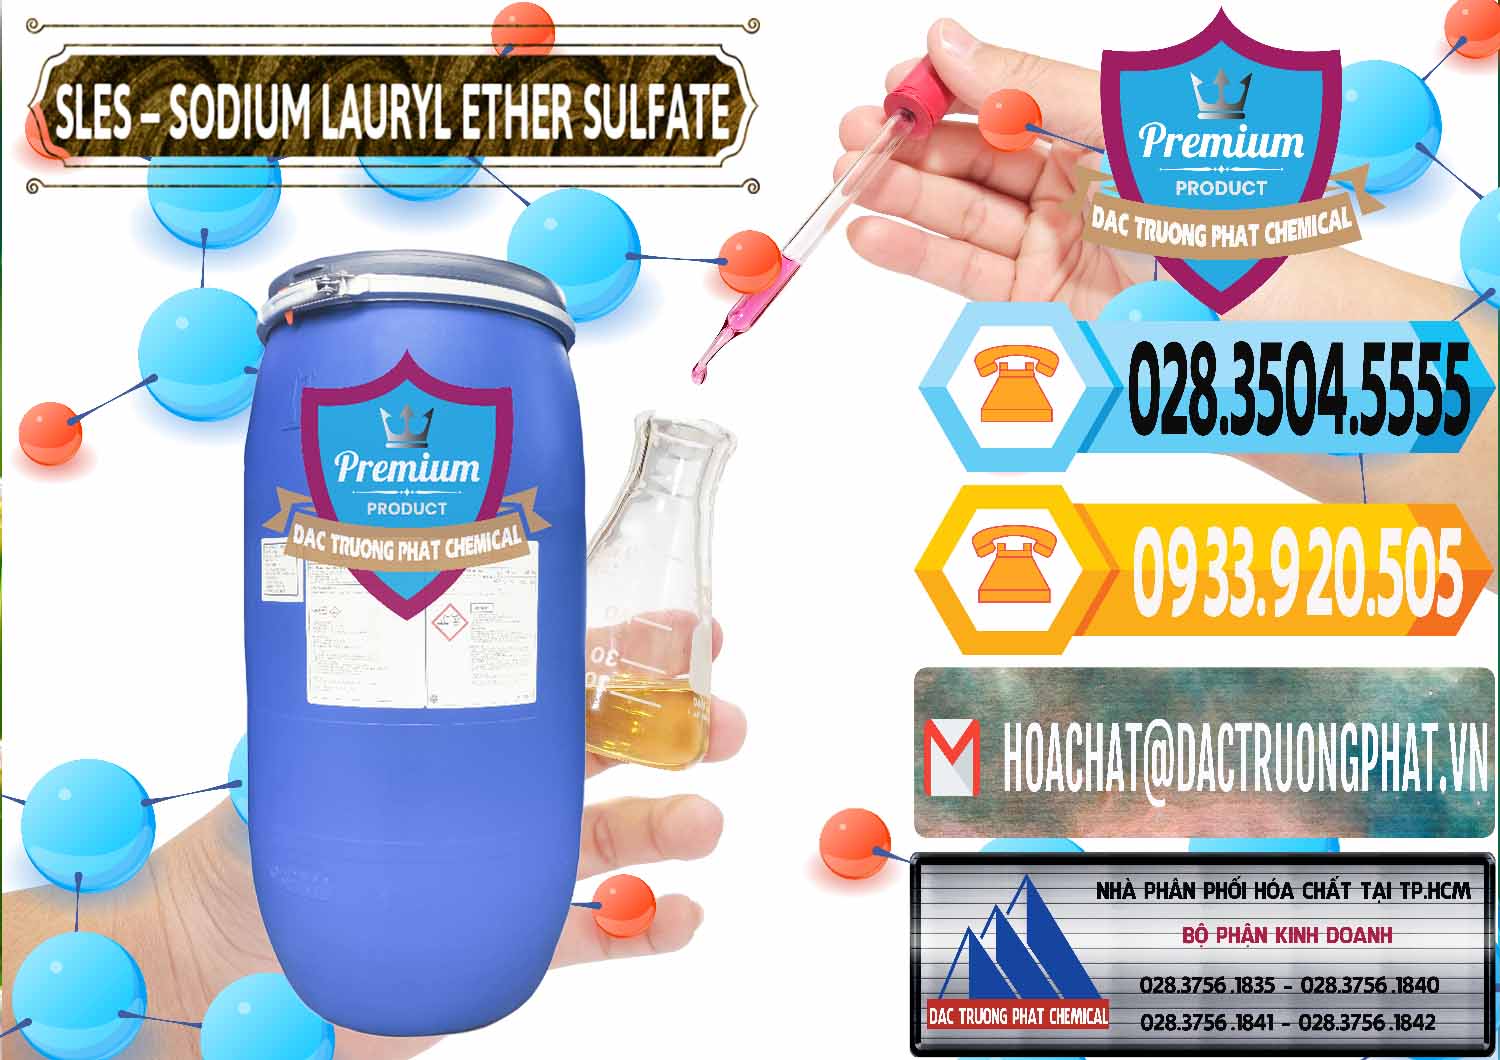 Chuyên kinh doanh & bán Chất Tạo Bọt Sles - Sodium Lauryl Ether Sulphate Kao Indonesia - 0046 - Công ty chuyên nhập khẩu _ cung cấp hóa chất tại TP.HCM - hoachattayrua.net